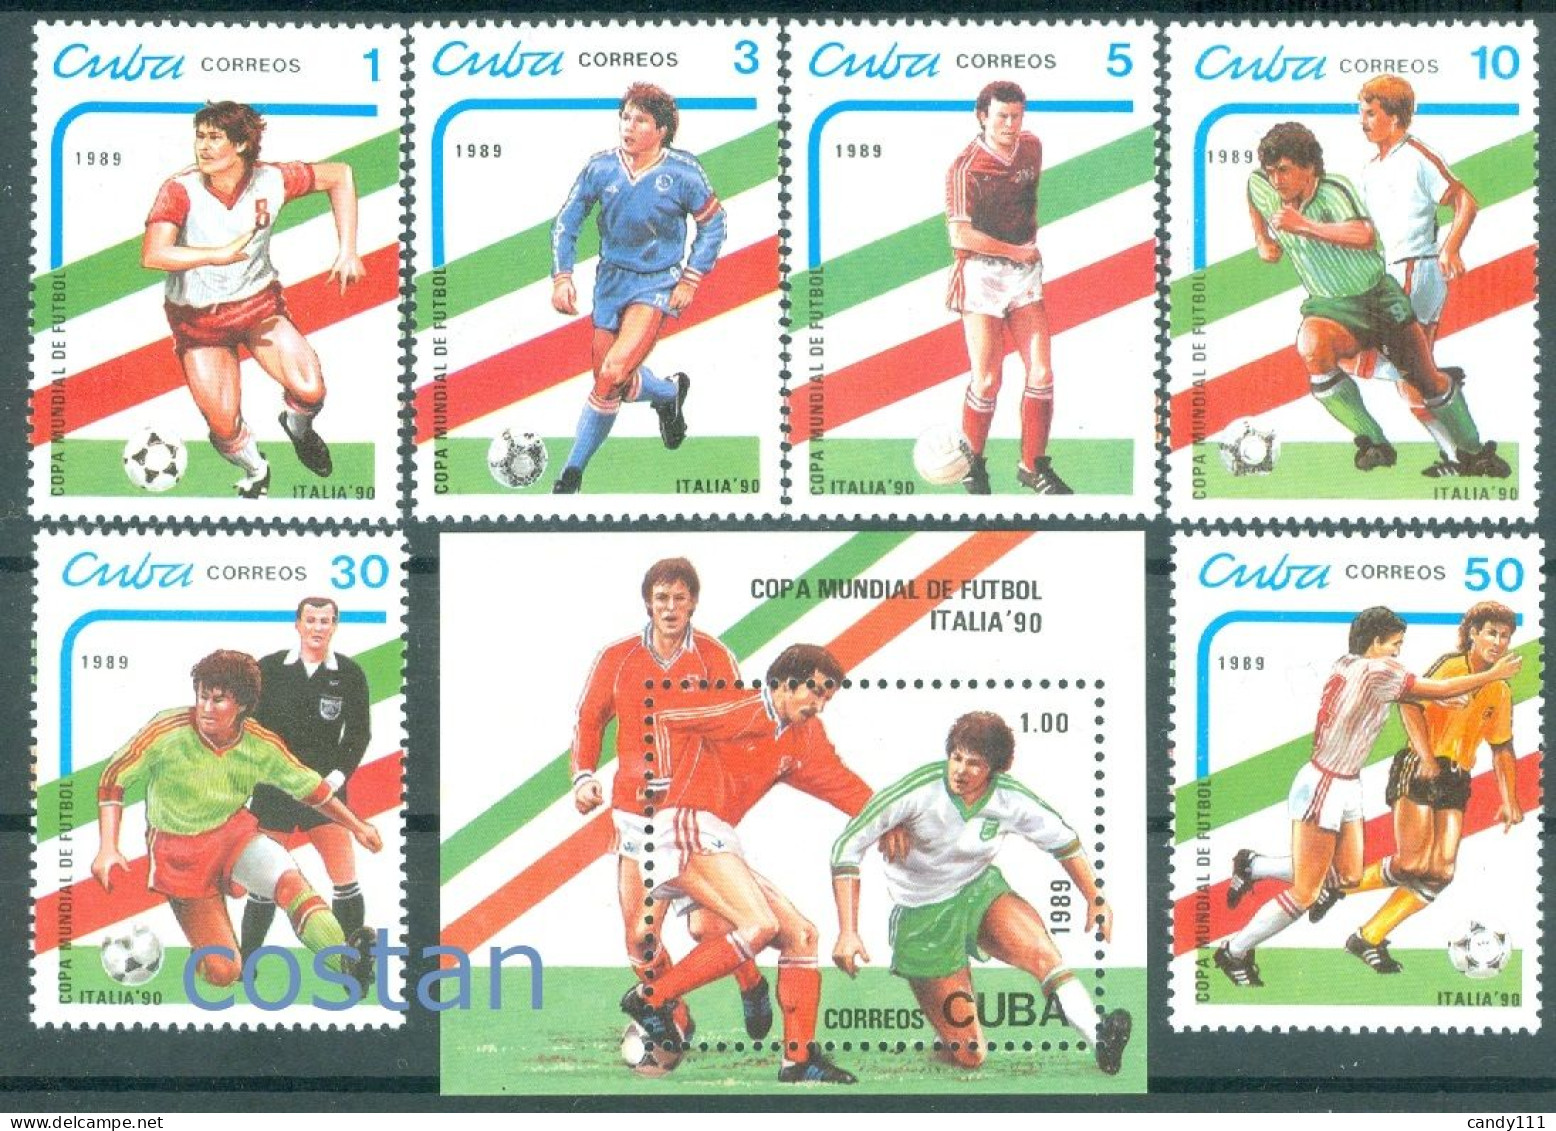 1989 Football/soccer World Championships Italy/ITALIA'90,cuba,3271,114,MNH - 1990 – Italie